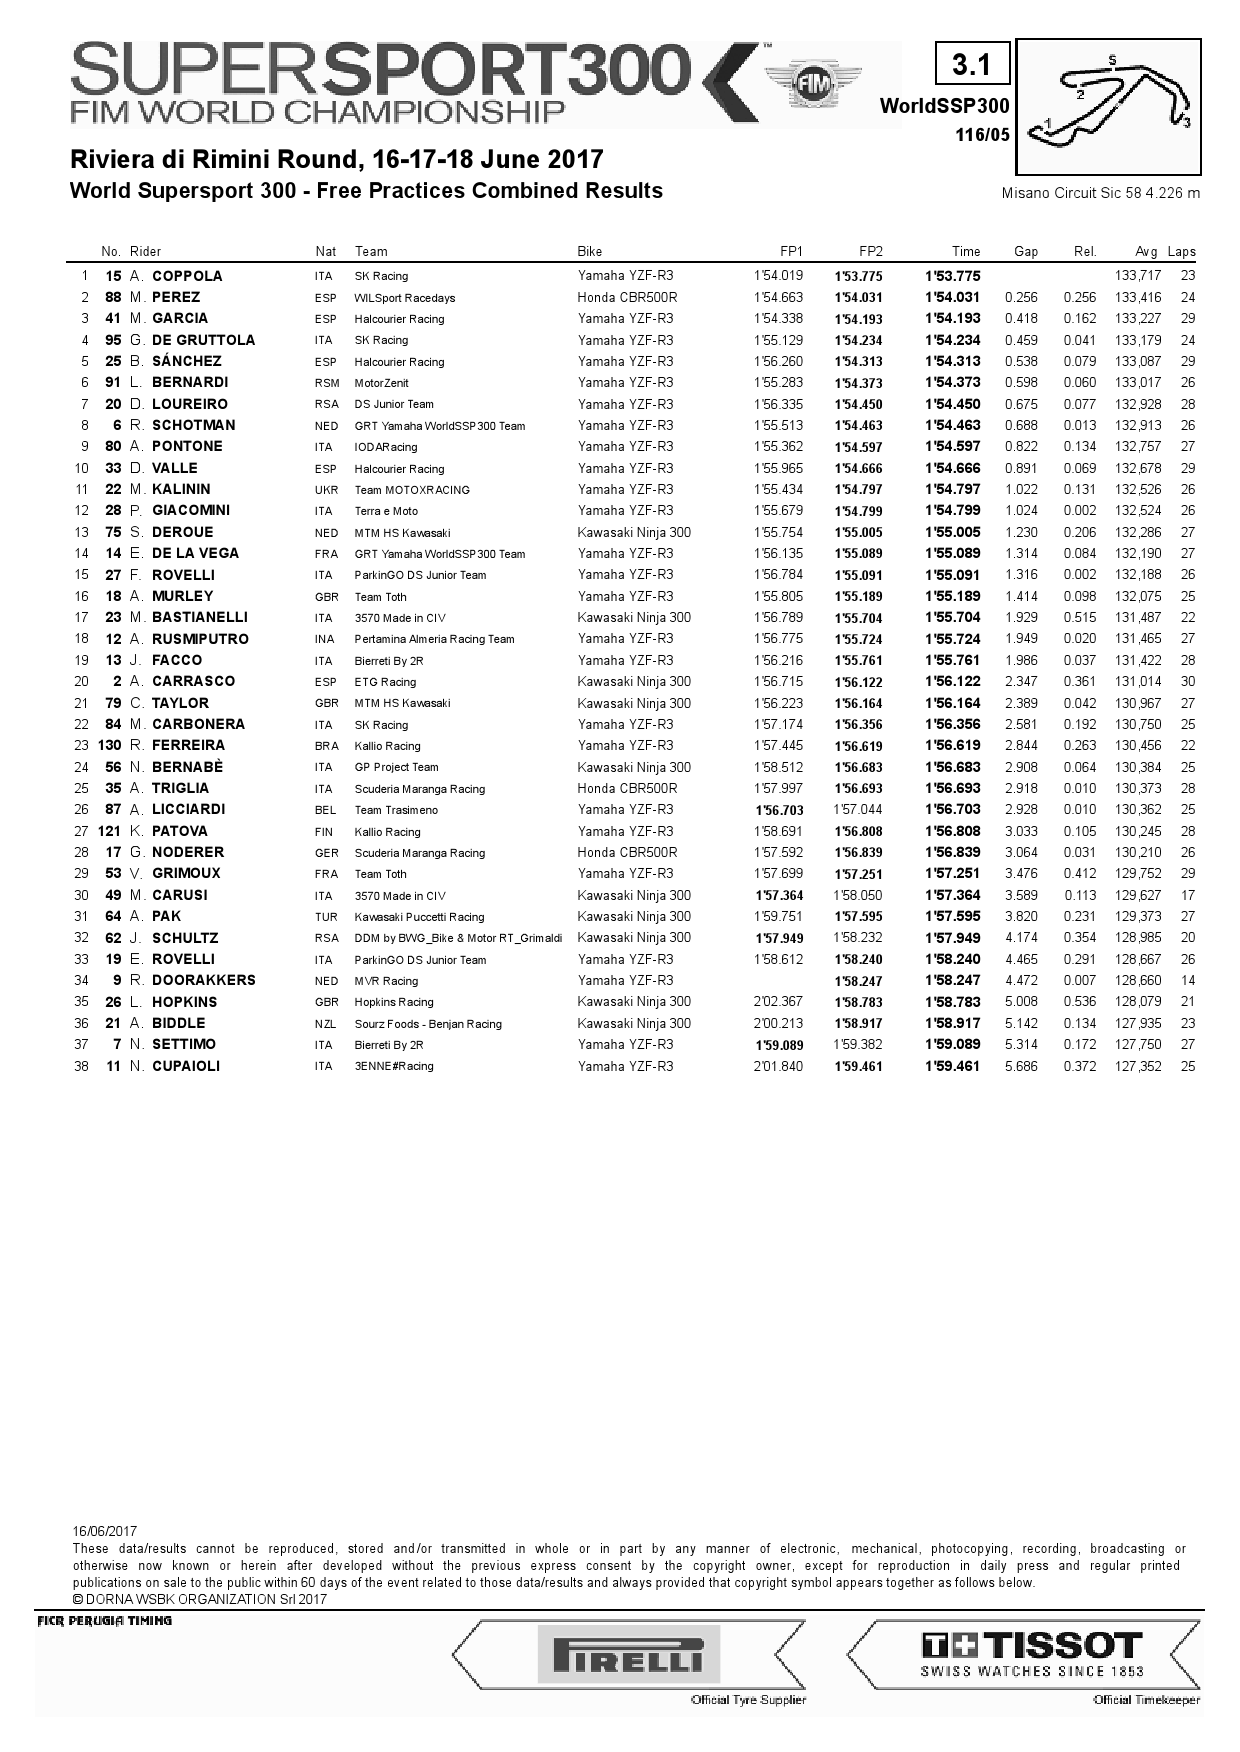 World Supersport 300 - результаты FP1 и FP2 в Мизано